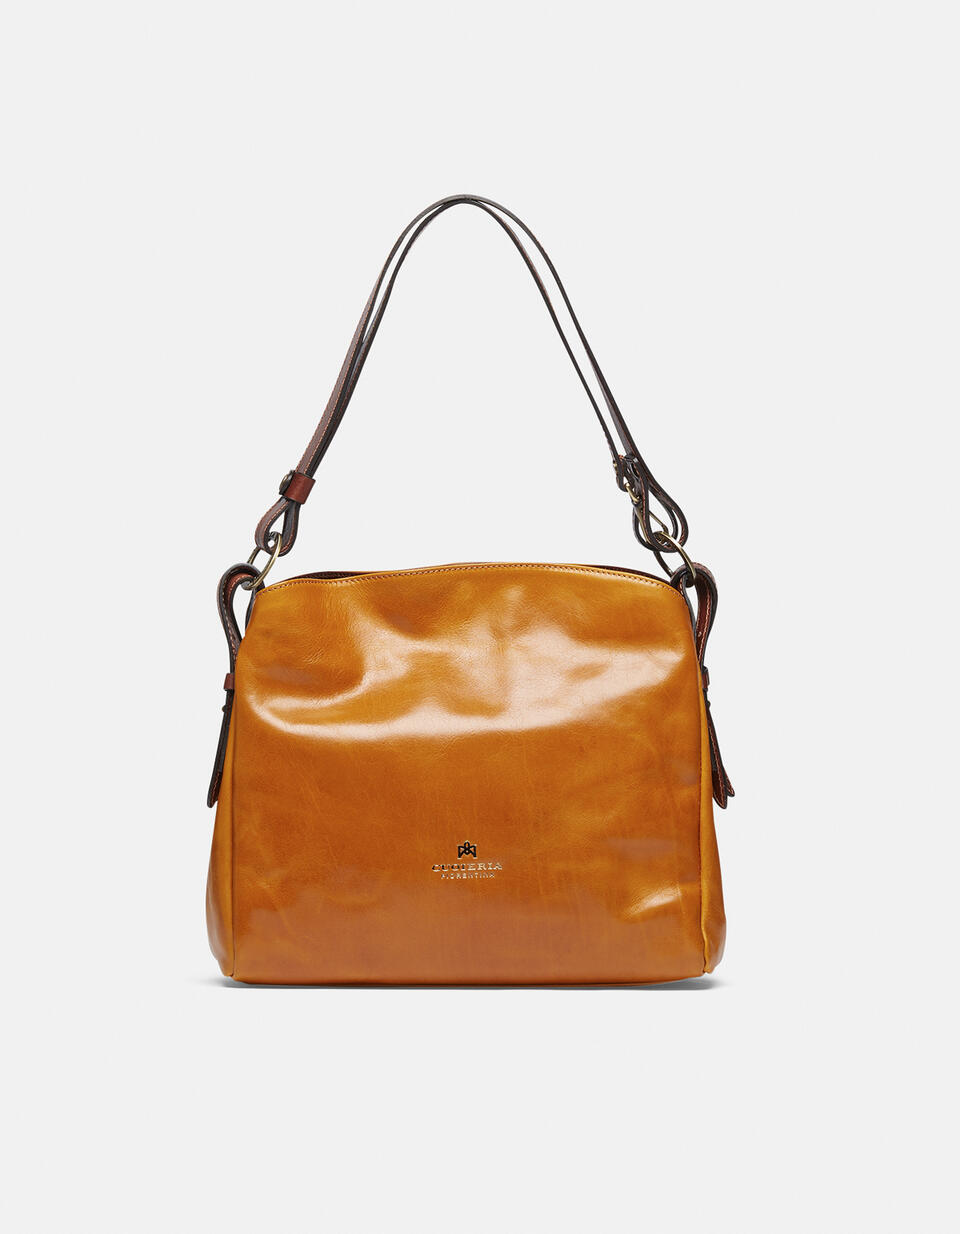 Large leather shoulder bag - Shoulder Bags - WOMEN'S BAGS | bags  - Shoulder Bags - WOMEN'S BAGS | bagsCuoieria Fiorentina